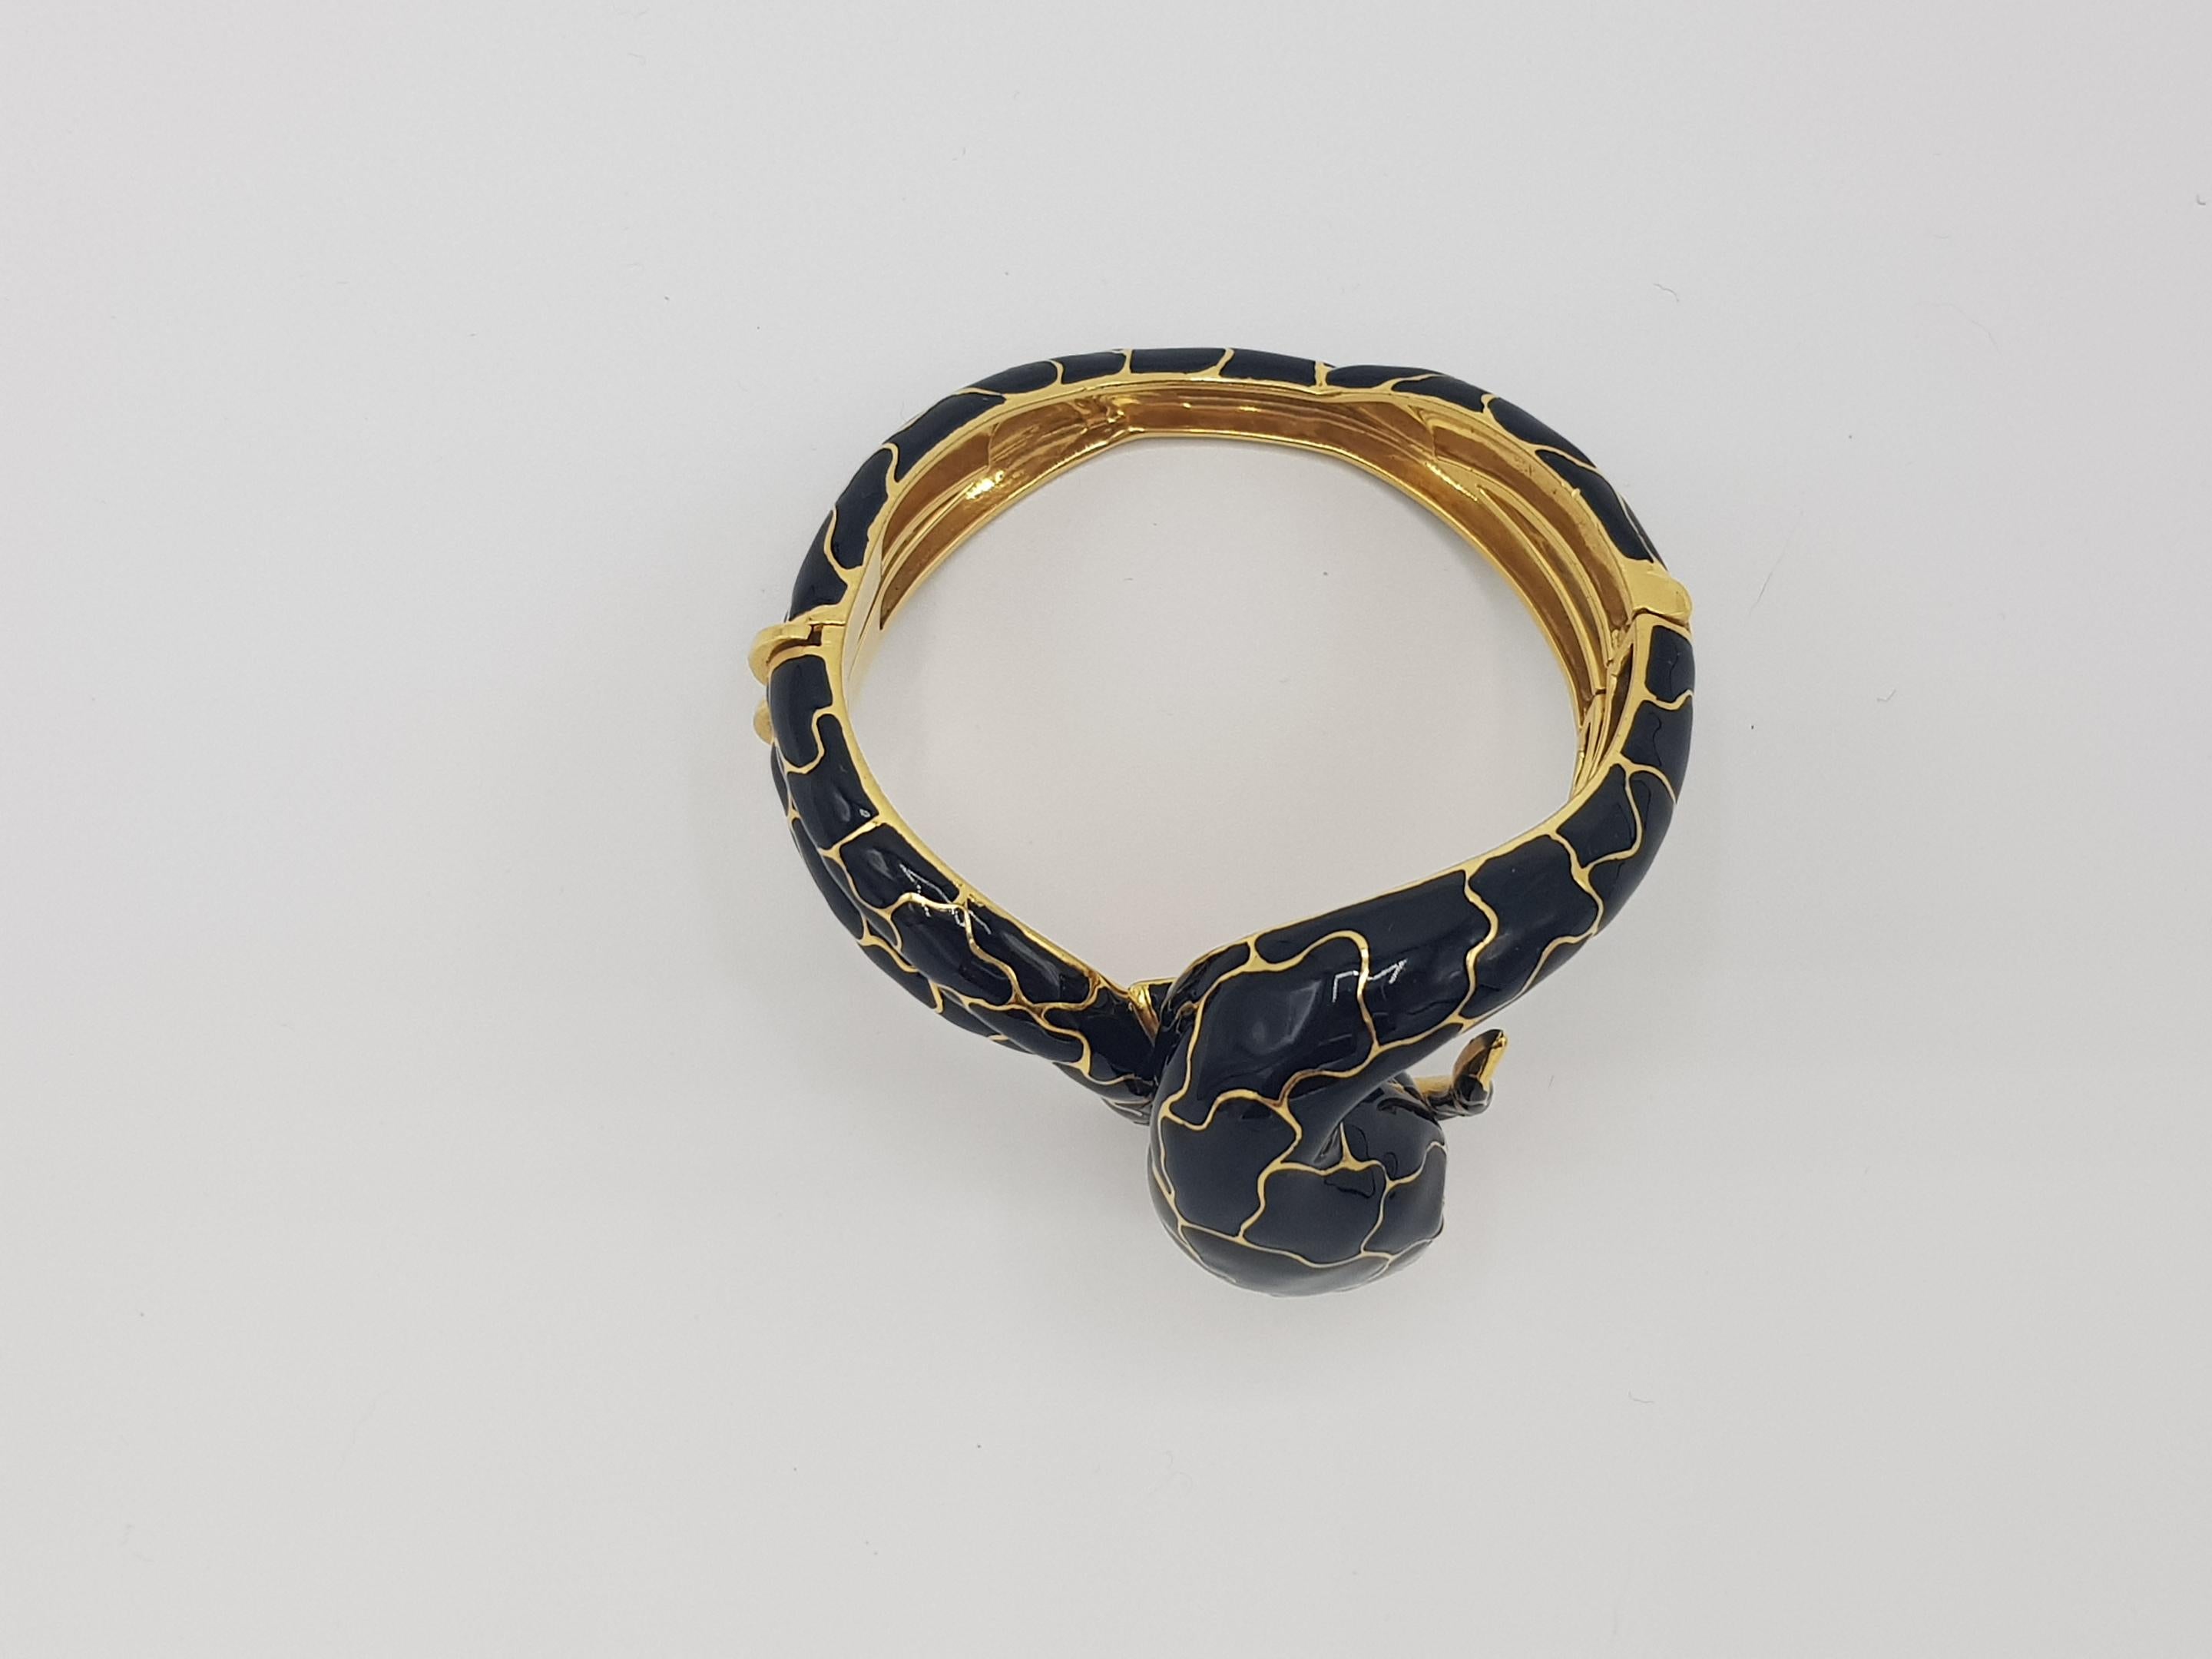 Brilliant Cut d'avossa Snake Bracelet, Yellow Gold and Black Enamel